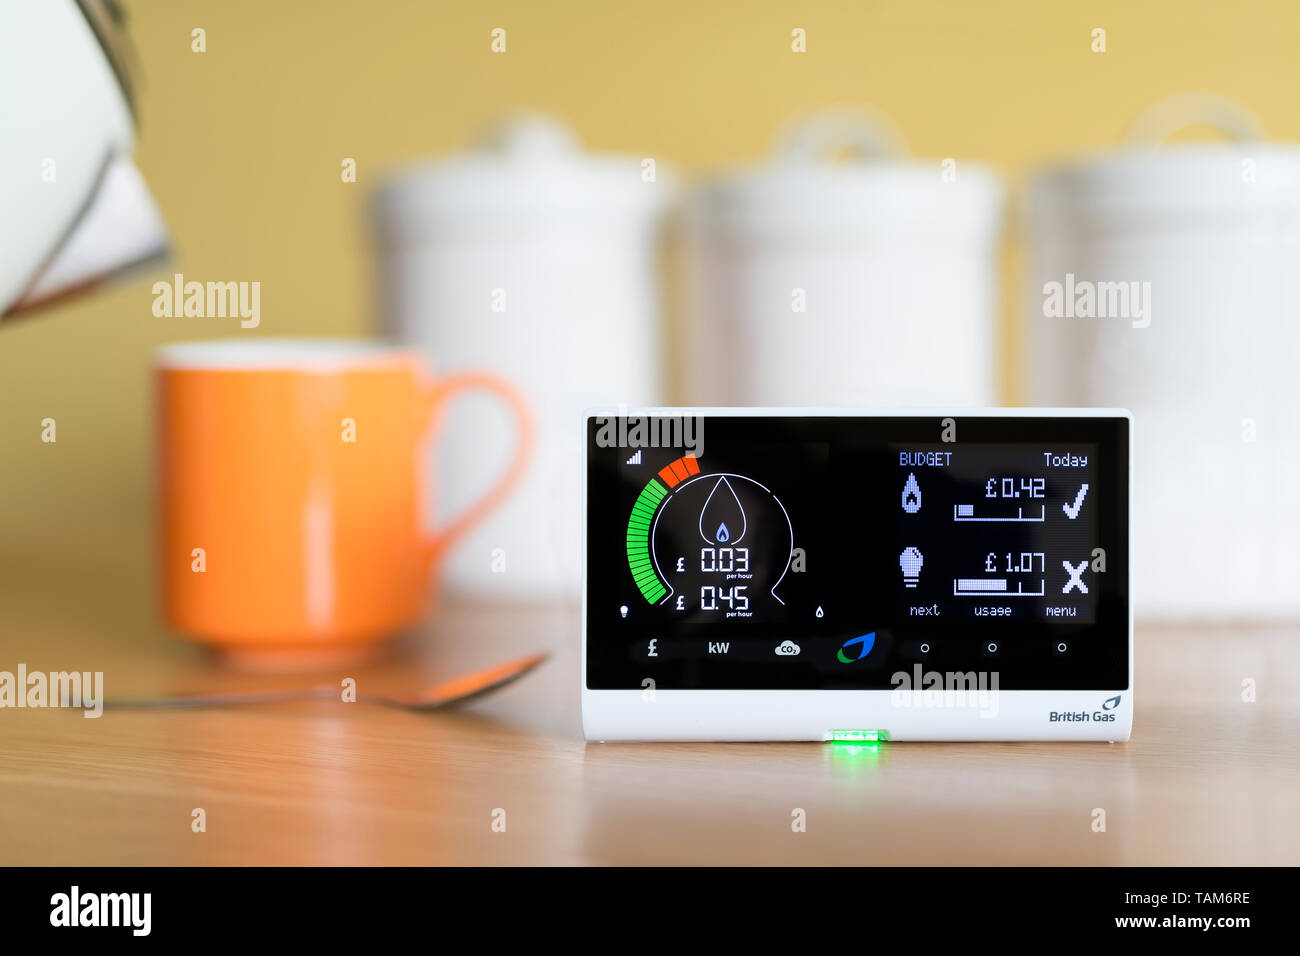 Un uso doméstico British Gas energy smart meter mostrando el costo del gas el uso de electricidad en un hogar en el Reino Unido, colocado en un ambiente de la cocina. Foto de stock